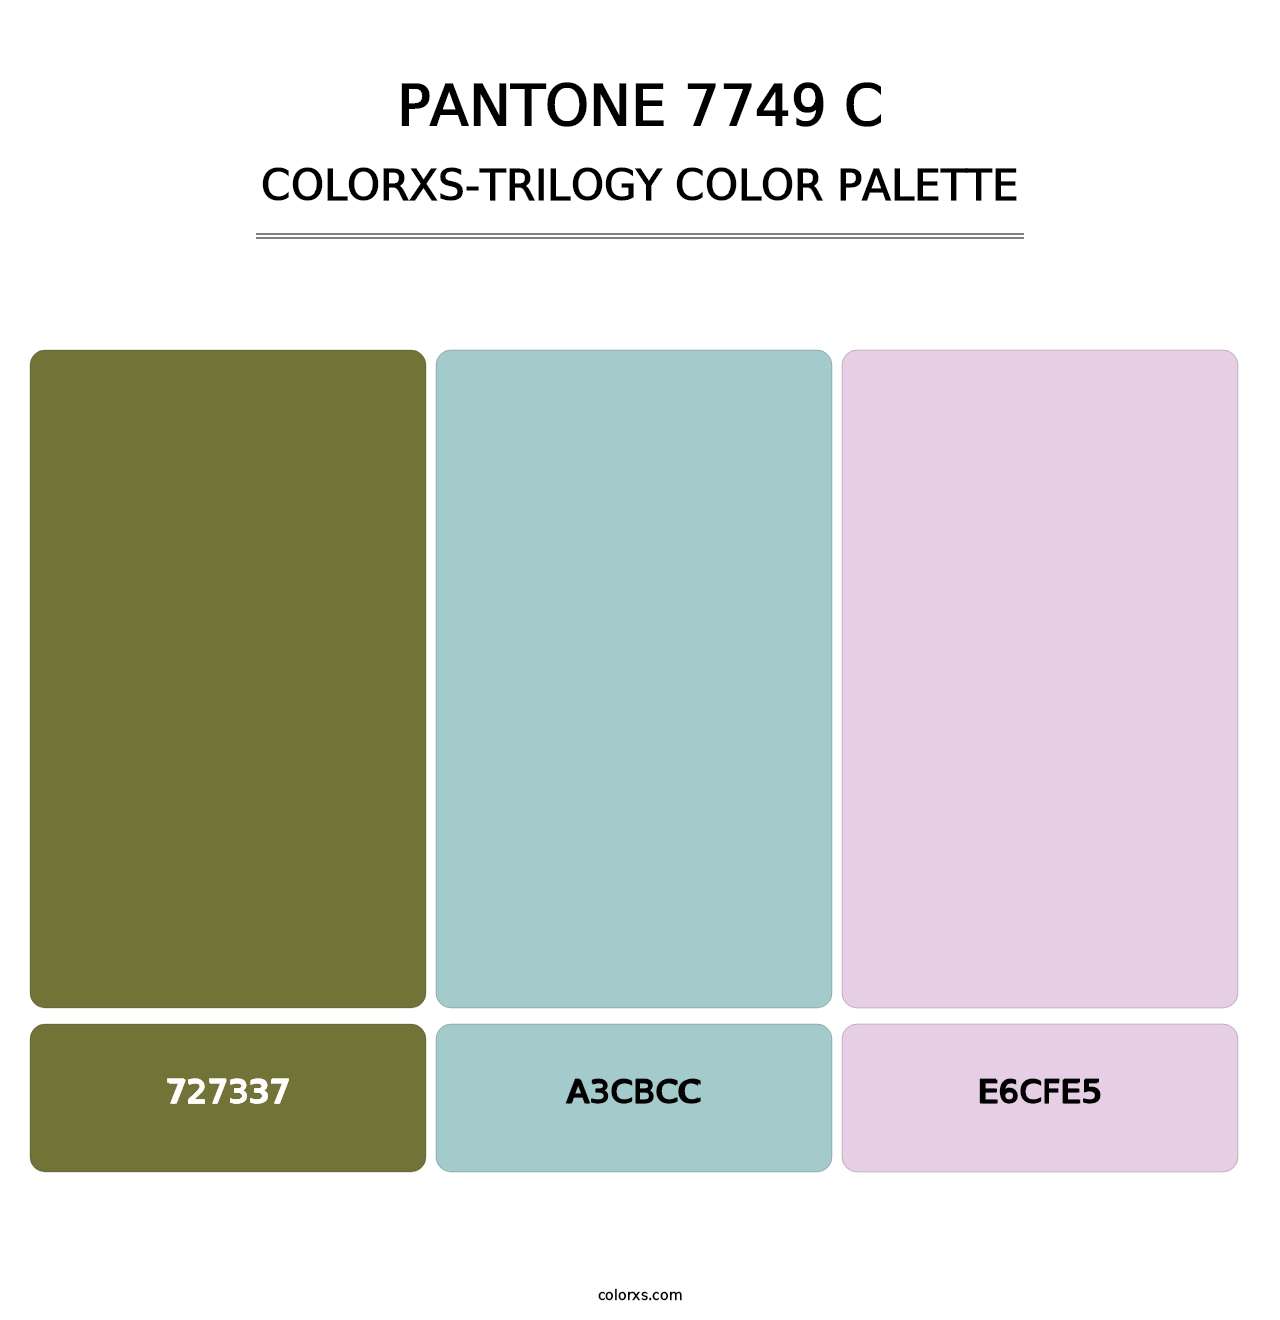 PANTONE 7749 C - Colorxs Trilogy Palette